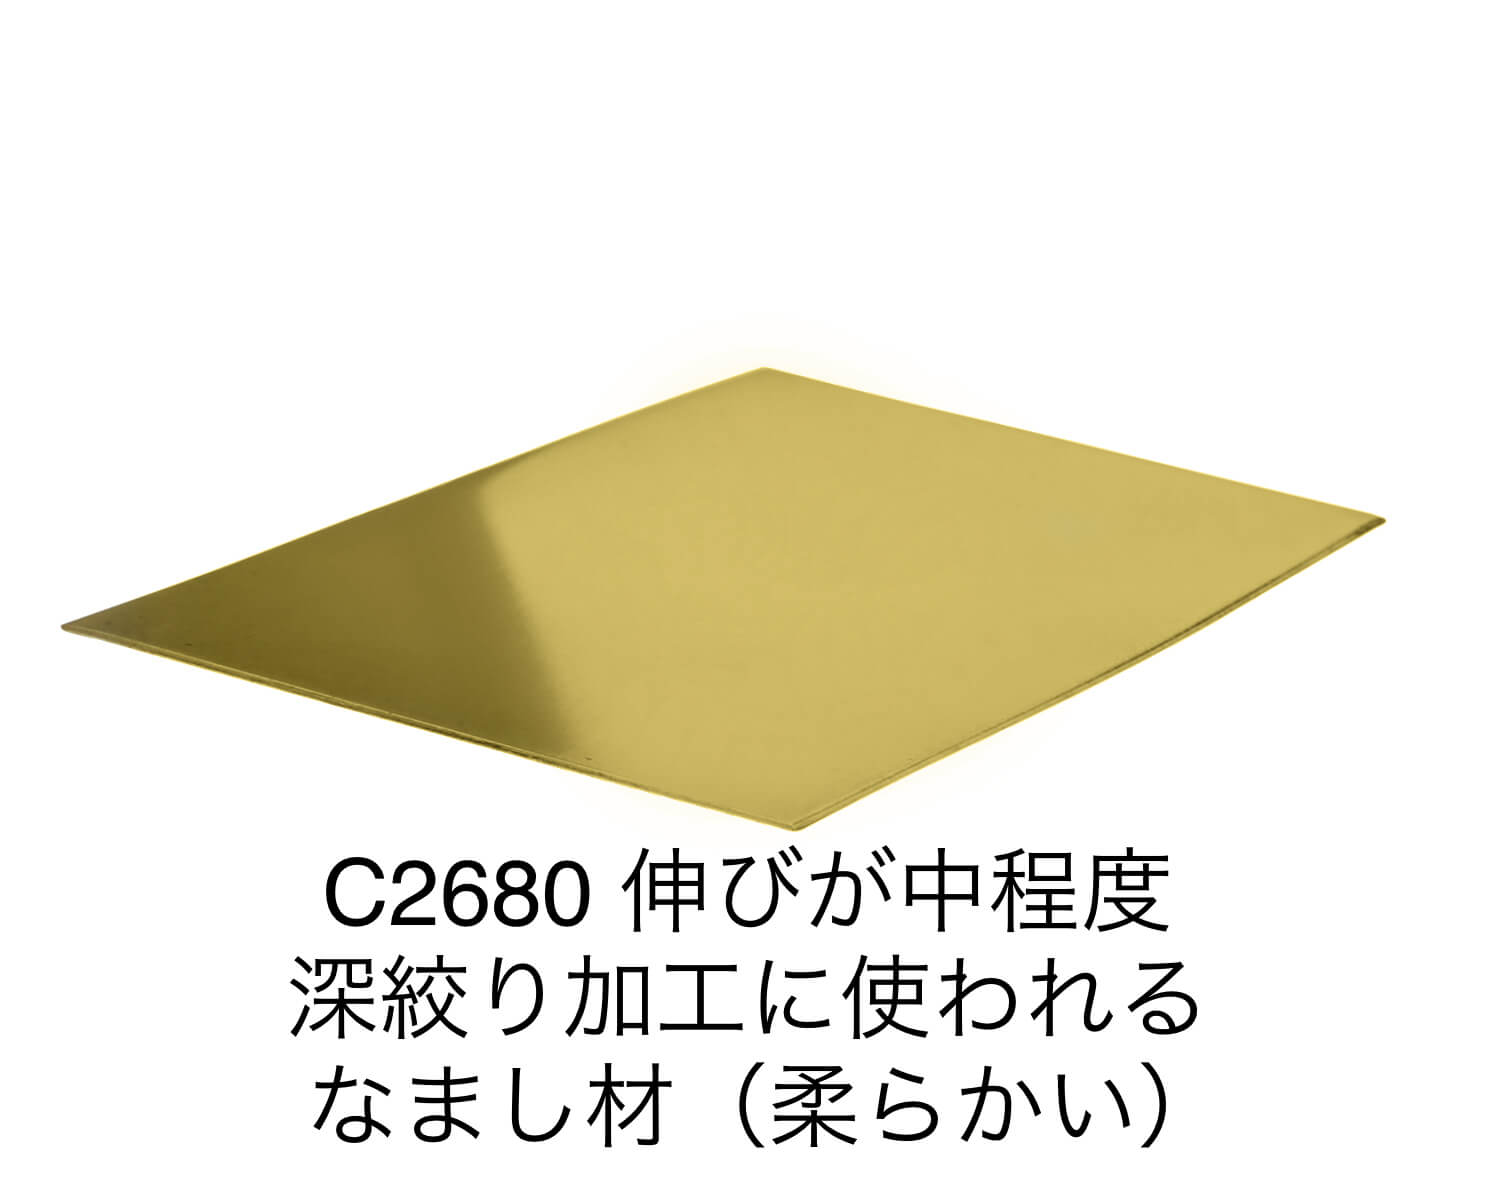 金属切板 銅板 タフピッチ 200mm × 500mm 厚さ5mm 1枚 オーダーメイド